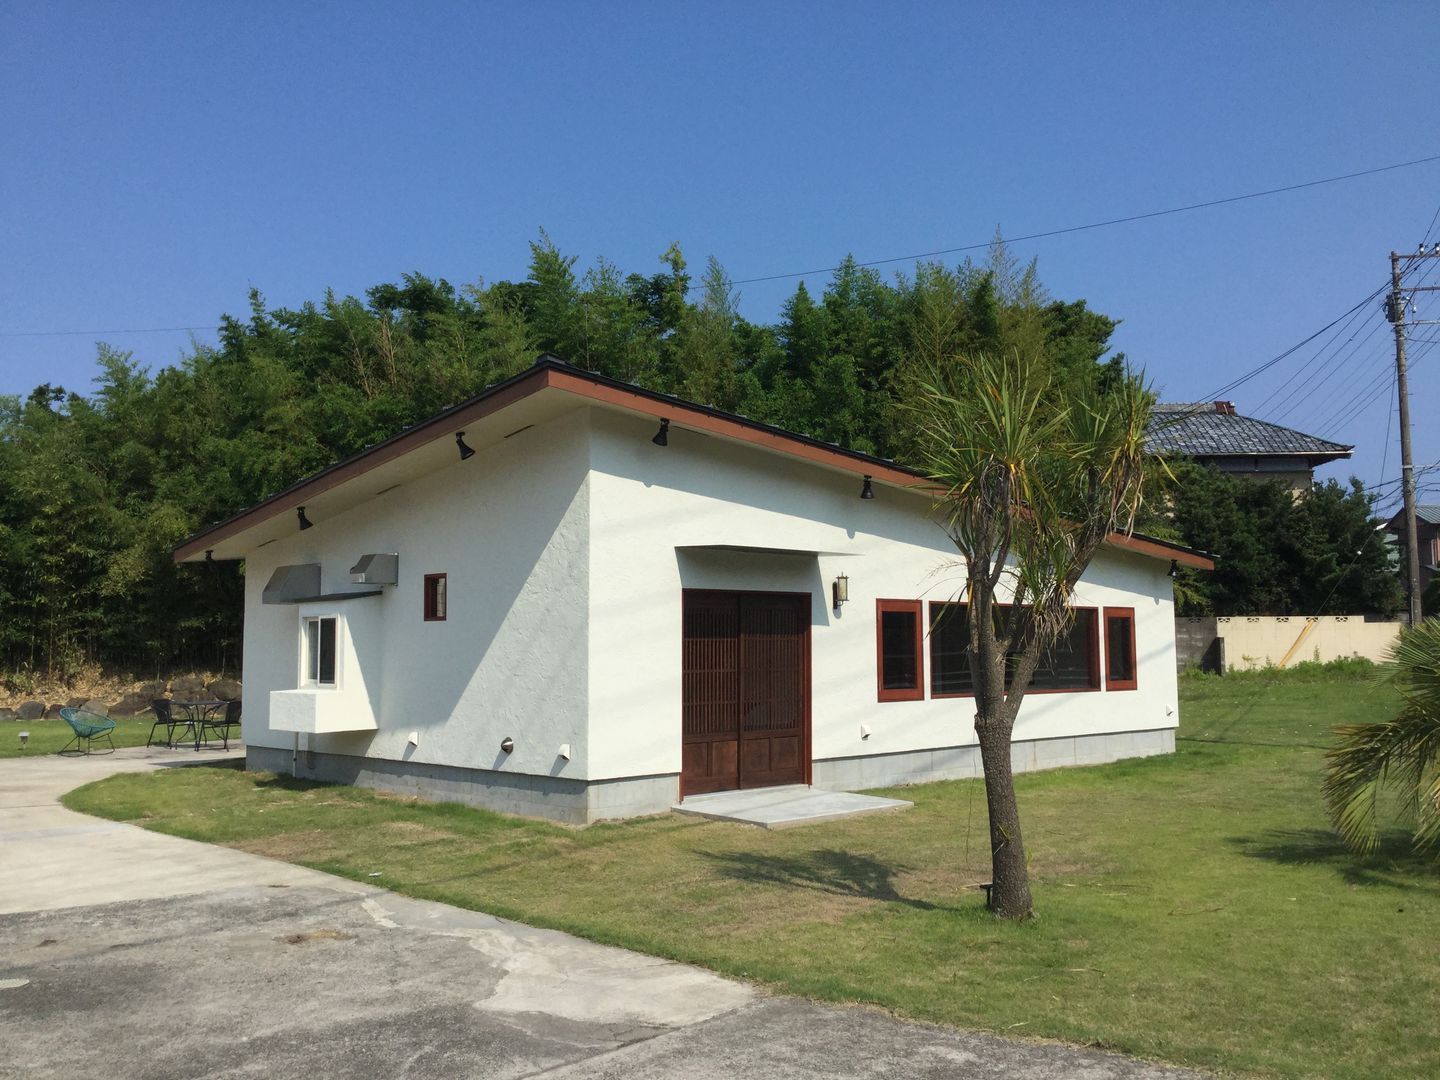 House in Torami, tai_tai STUDIO tai_tai STUDIO Casas rústicas